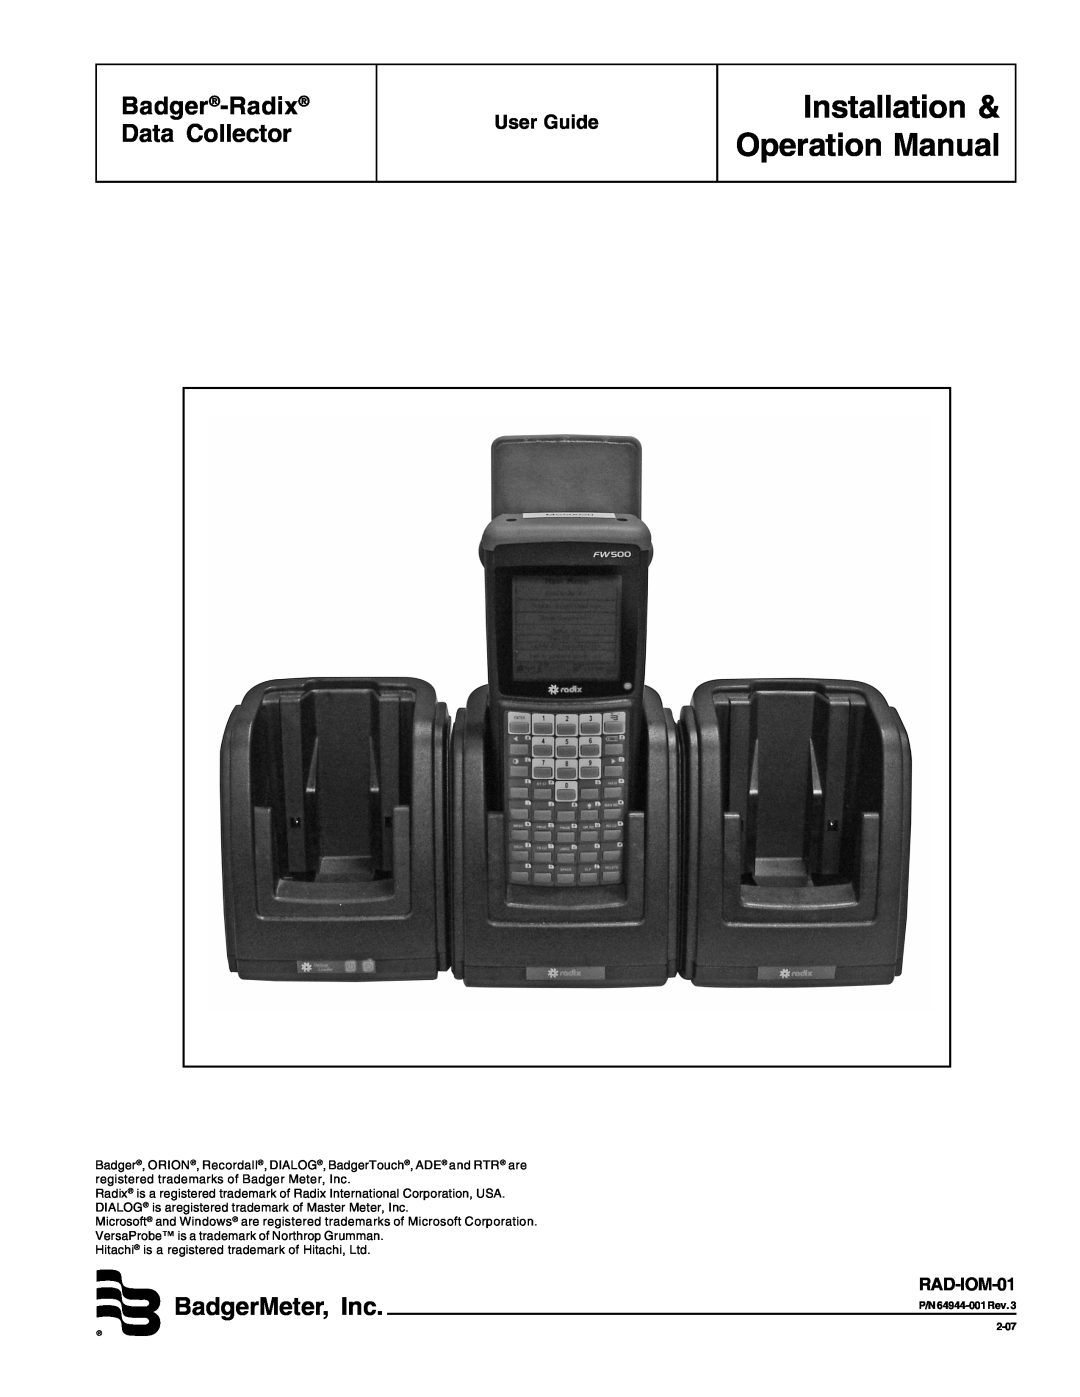 Badger Basket RAD-IOM-01, N64944-001 operation manual Badger-Radix Data Collector, BadgerMeter, Inc, User Guide 